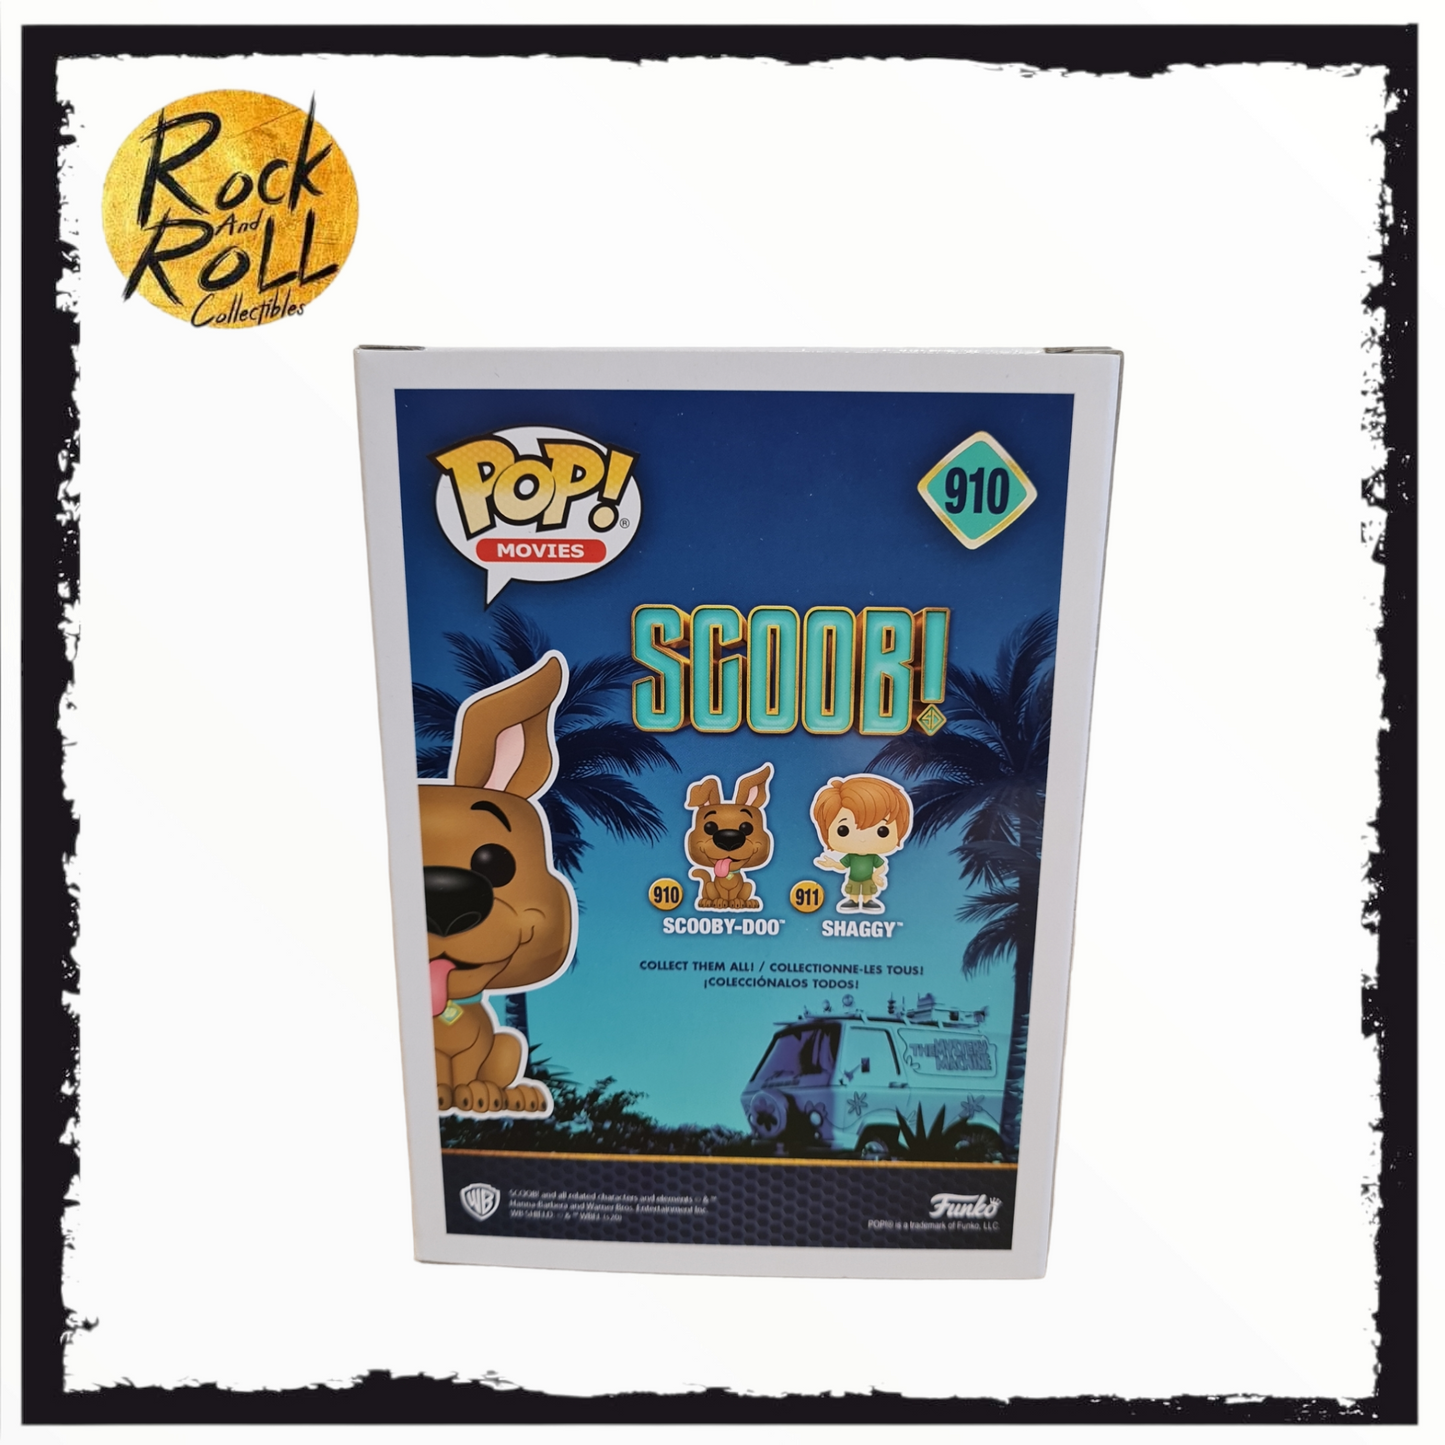 Scoob! - Scooby Doo Funko Pop! #910 Special Edition